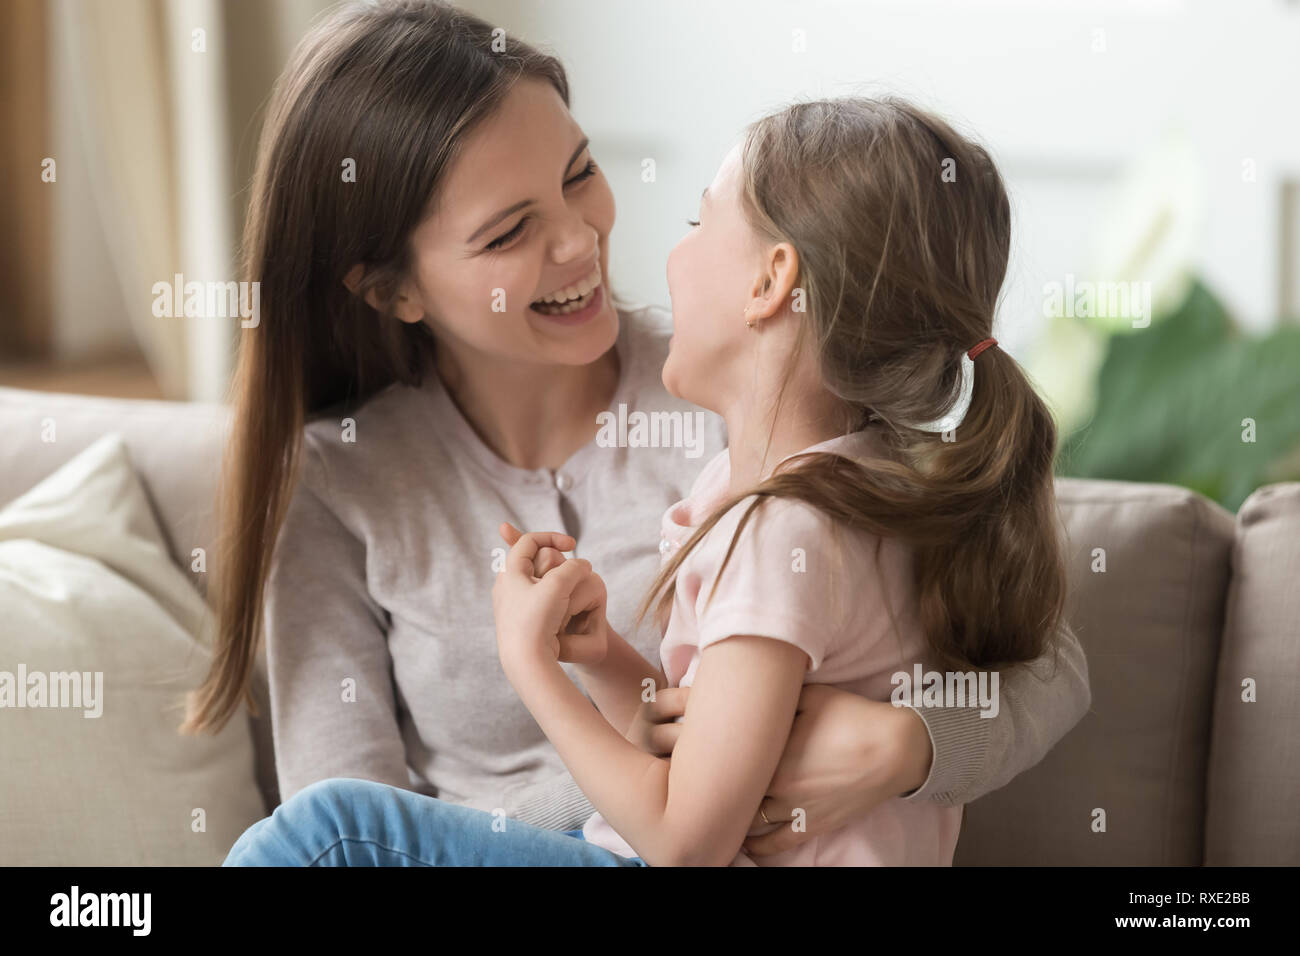 Smiling cute kid girl et la mère s'amusant rire ensemble Banque D'Images